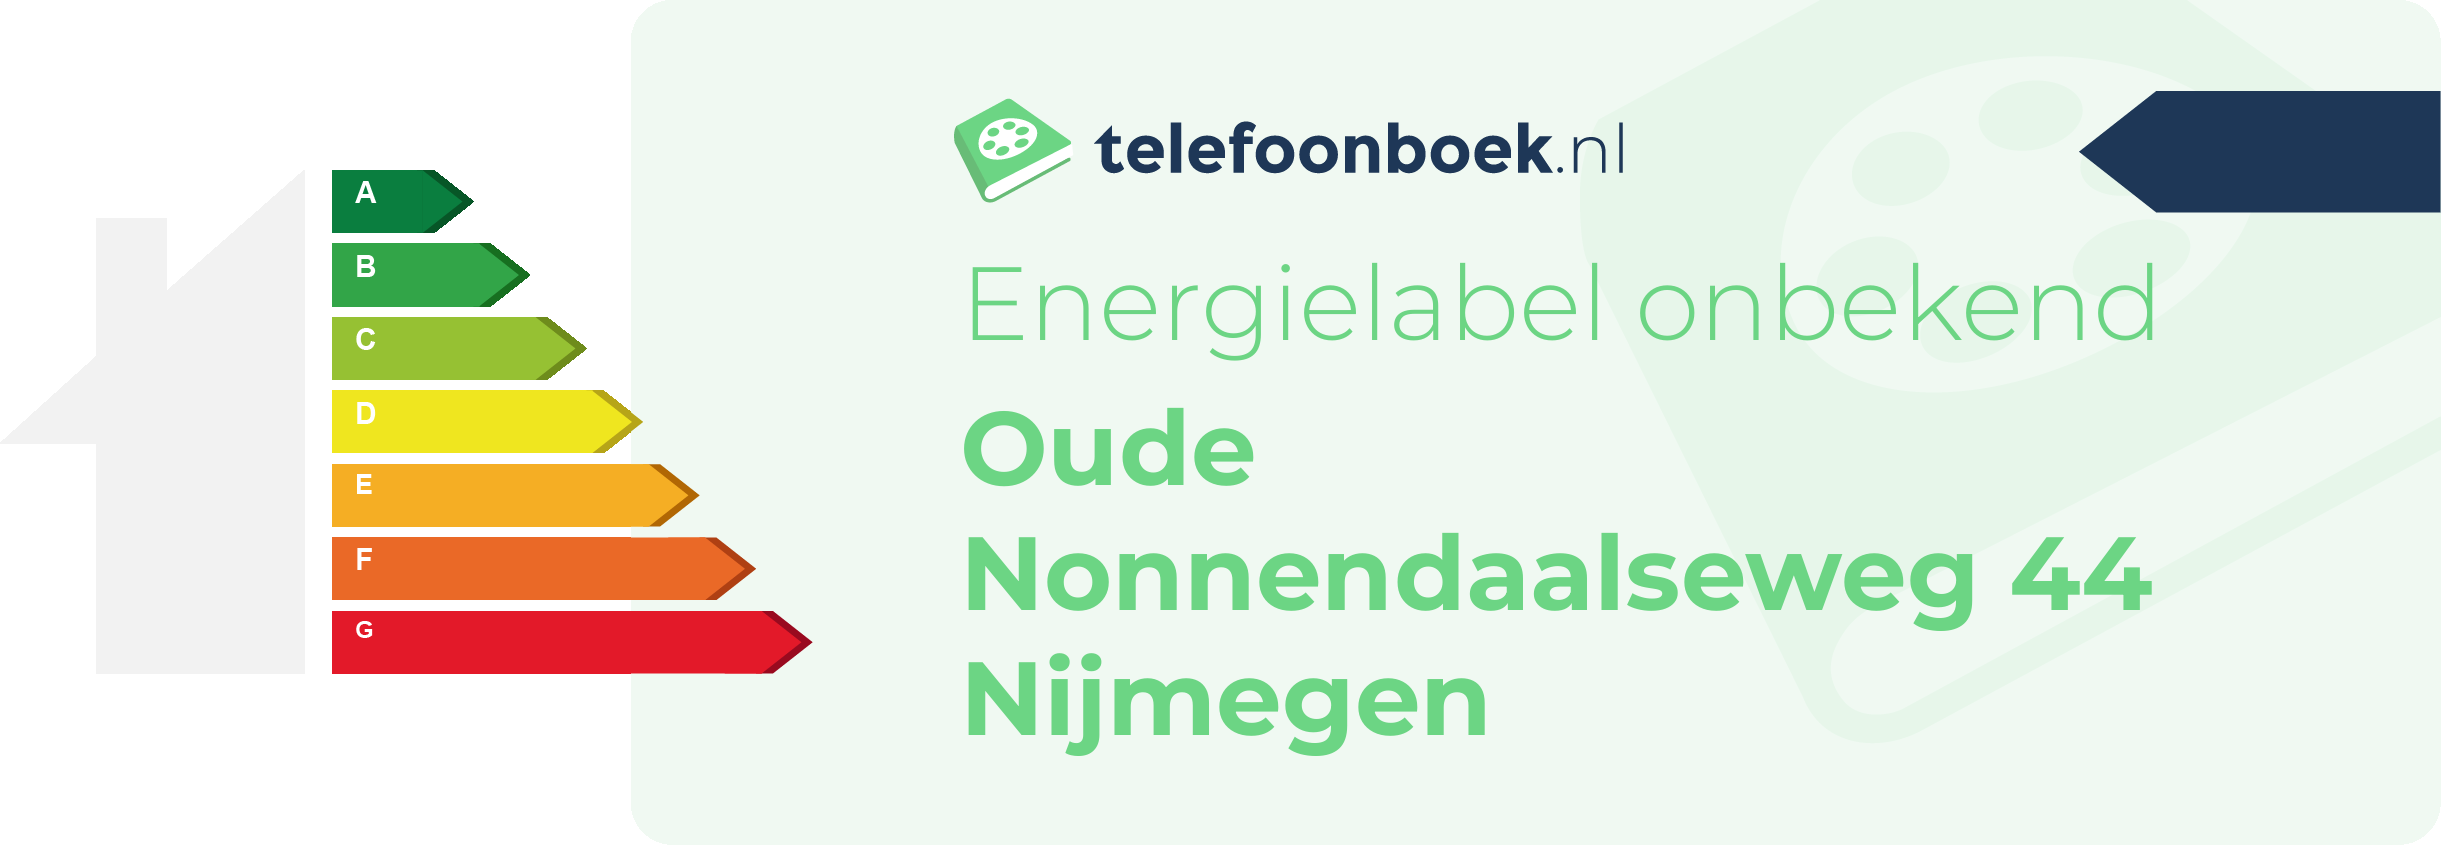 Energielabel Oude Nonnendaalseweg 44 Nijmegen